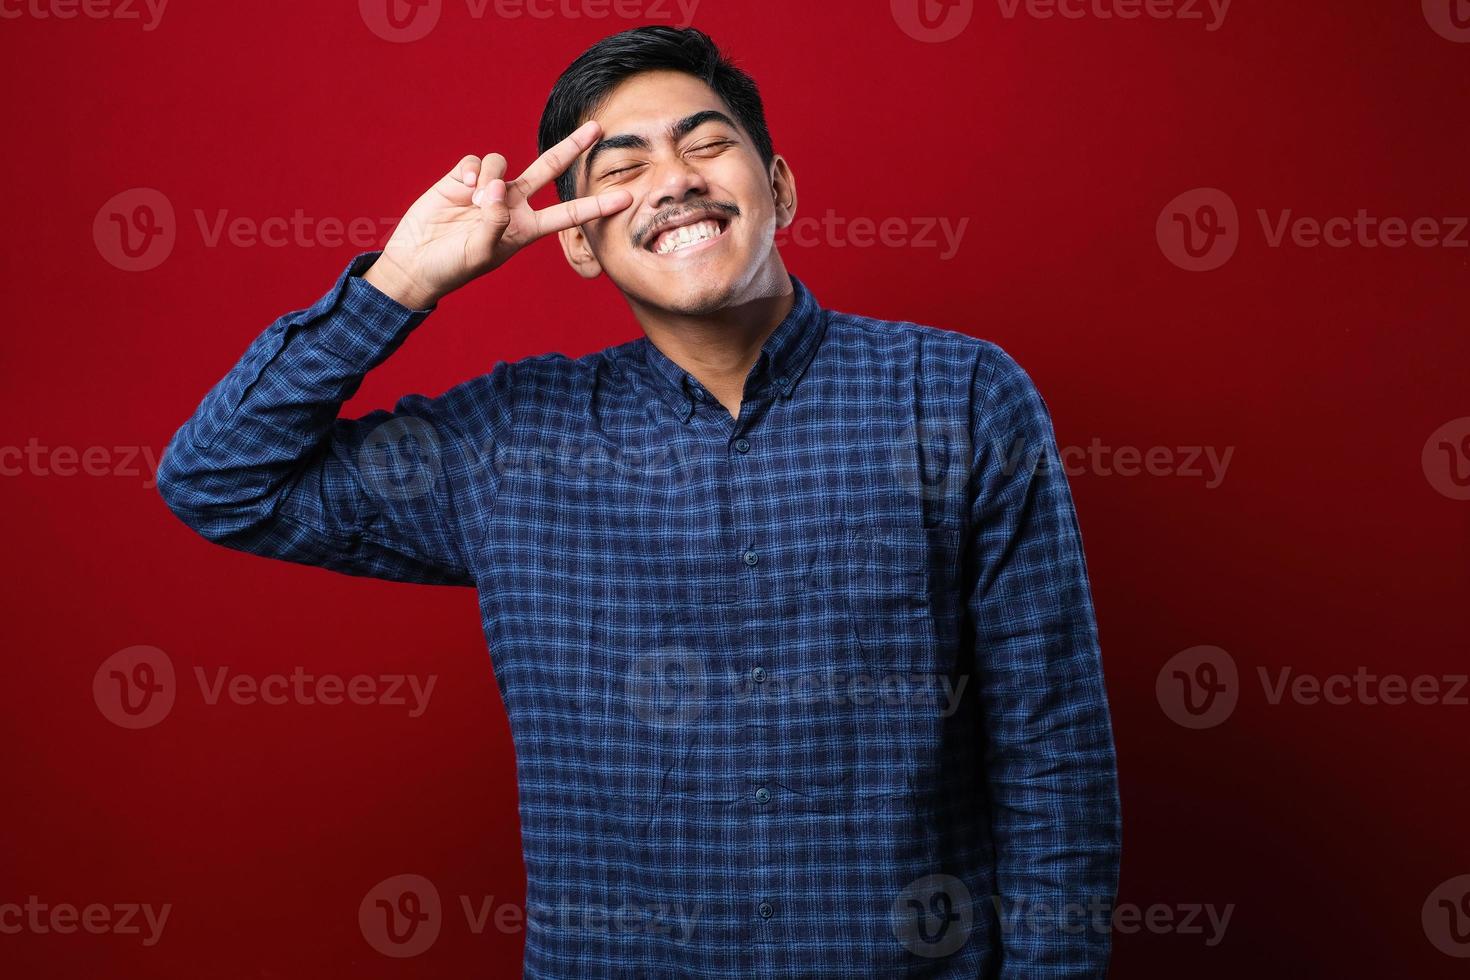 giovane uomo asiatico bello che indossa una camicia casual facendo simbolo di pace con le dita sul viso, sorridente allegro mostrando vittoria foto